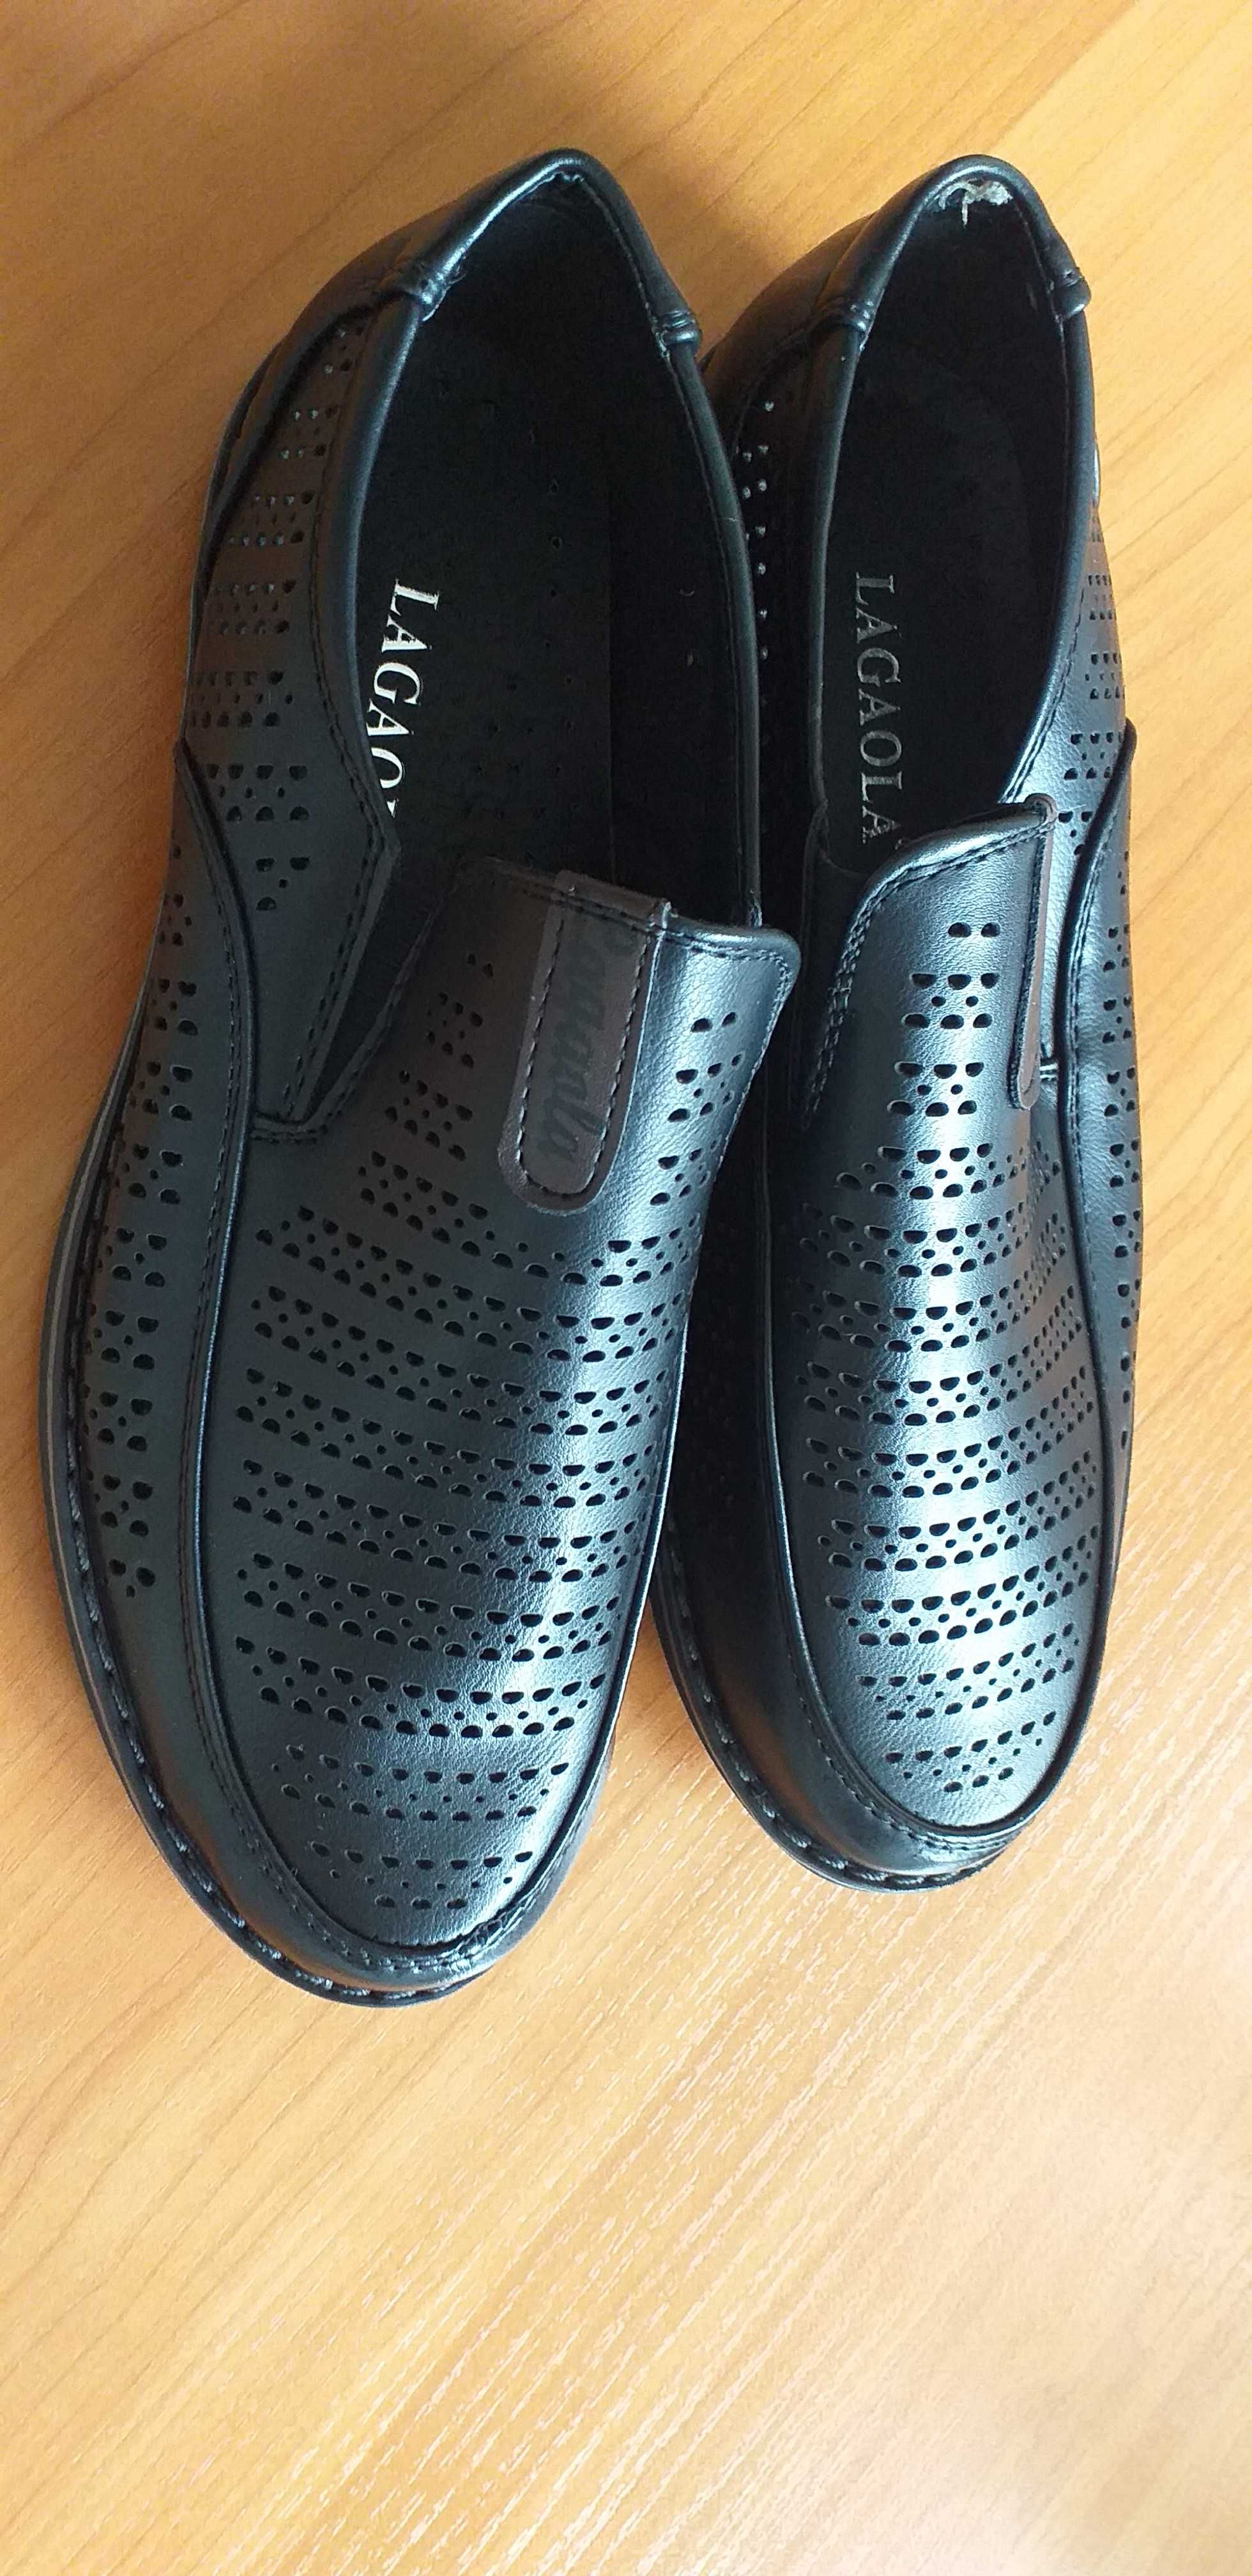 продам недорого новые мужские туфли размер 36,цена 3000тенге